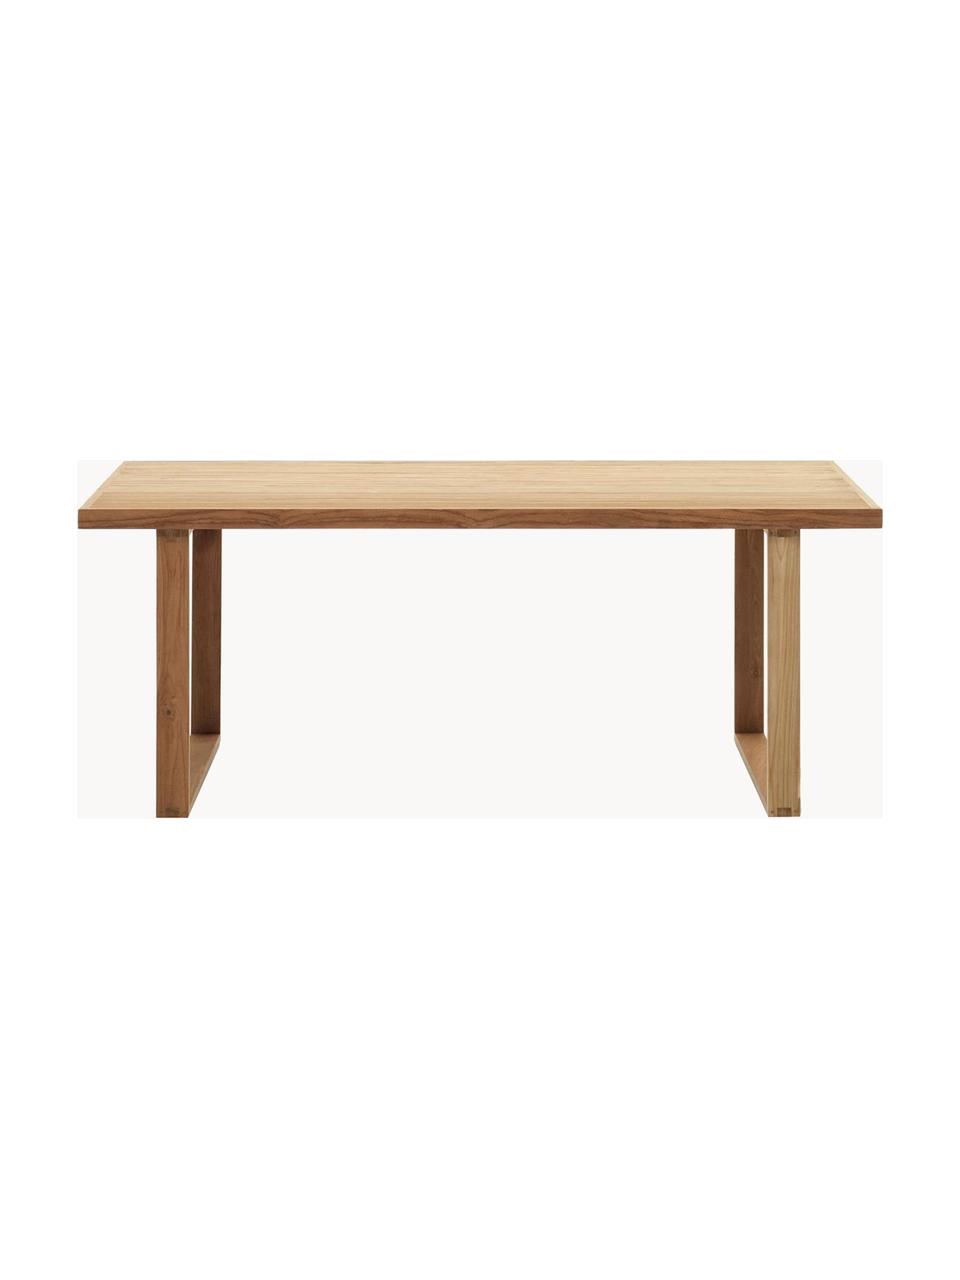 Stół ogrodowy z drewna tekowego Canadell, 180 x 90 cm, 100% drewno tekowe, Drewno tekowe, S 180 x G 90 cm